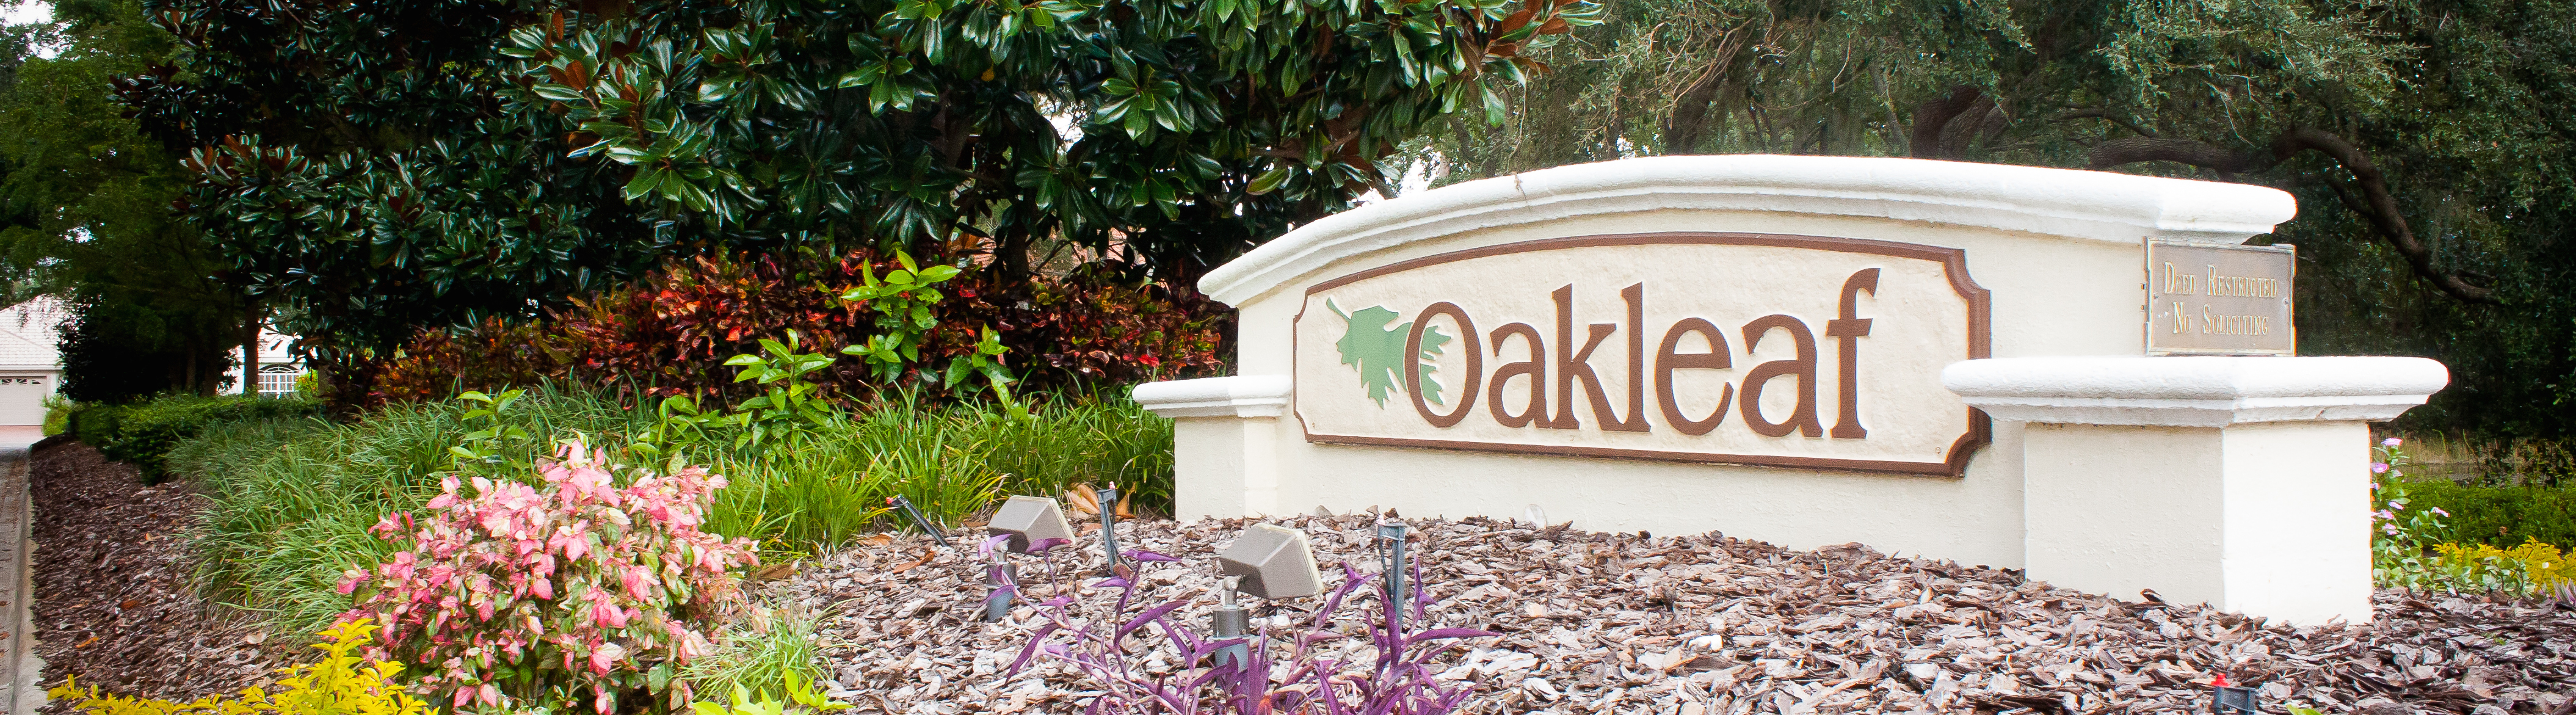 Oakleaf Homes for Sale in Sarasota, Florida 